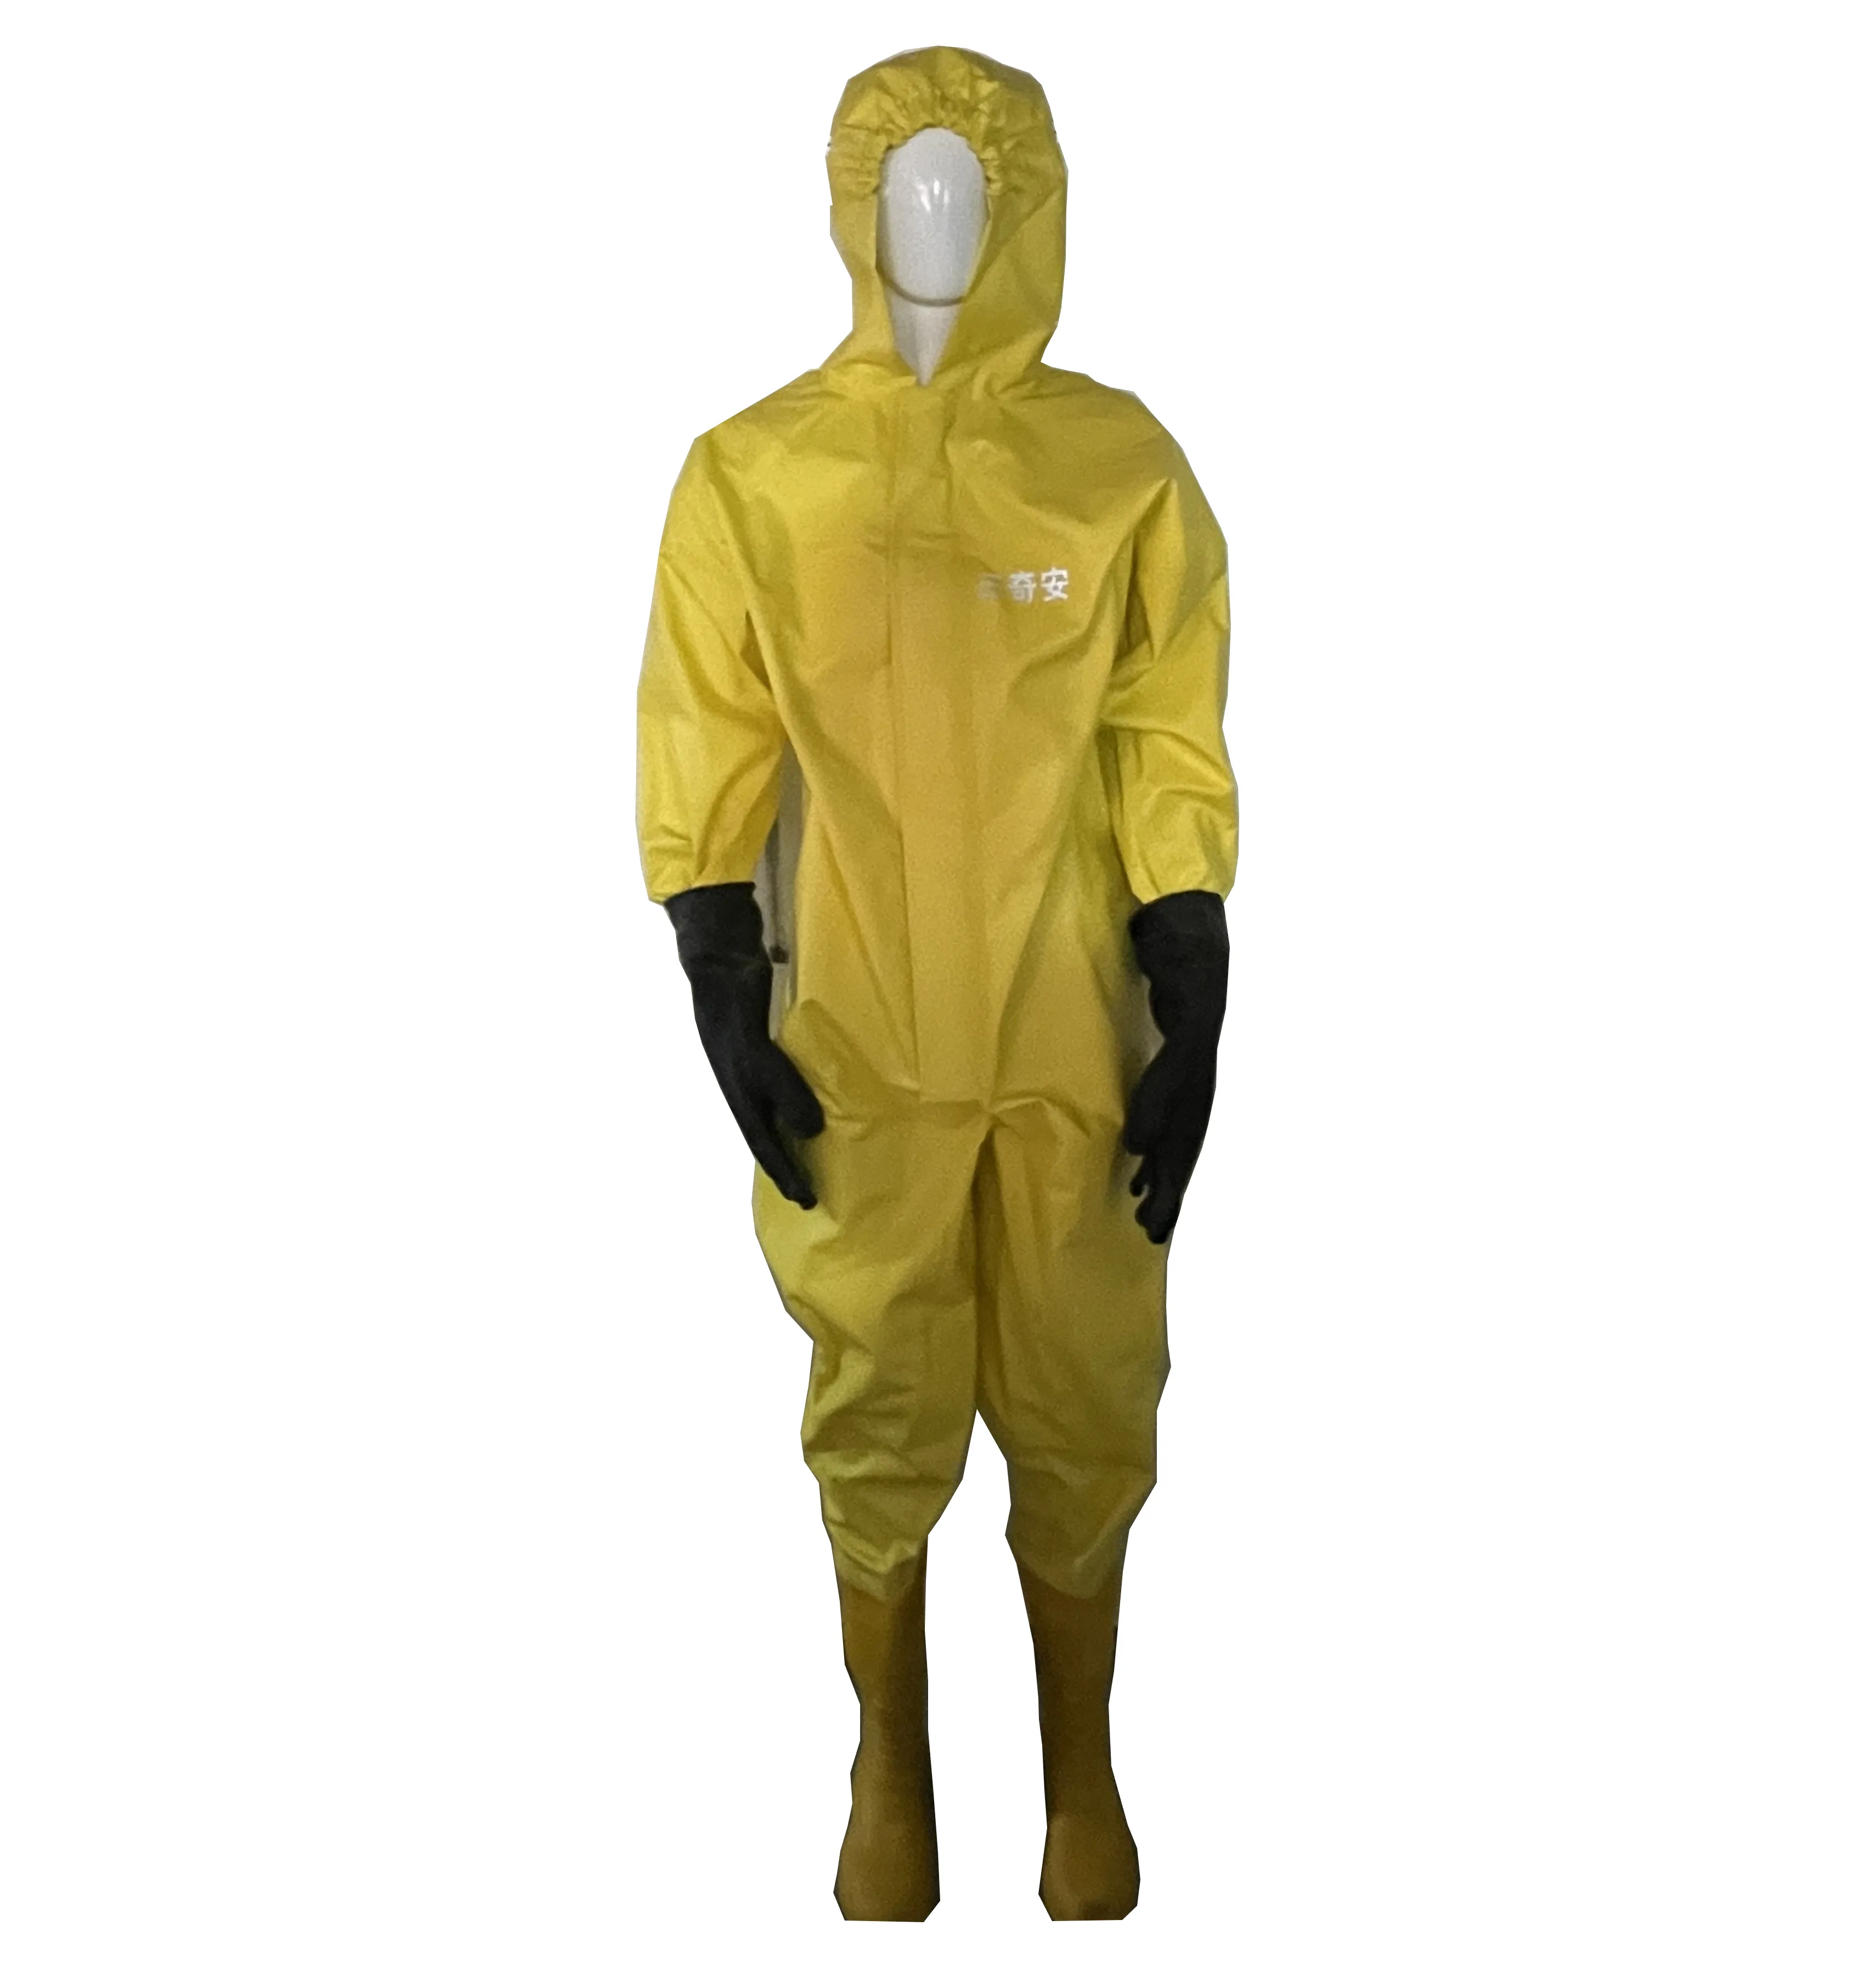 Sıcak satış butil kauçuk malzeme kimyasal koruyucu vücut emniyet Hazmat tulum kimyasal koruyucu elbise